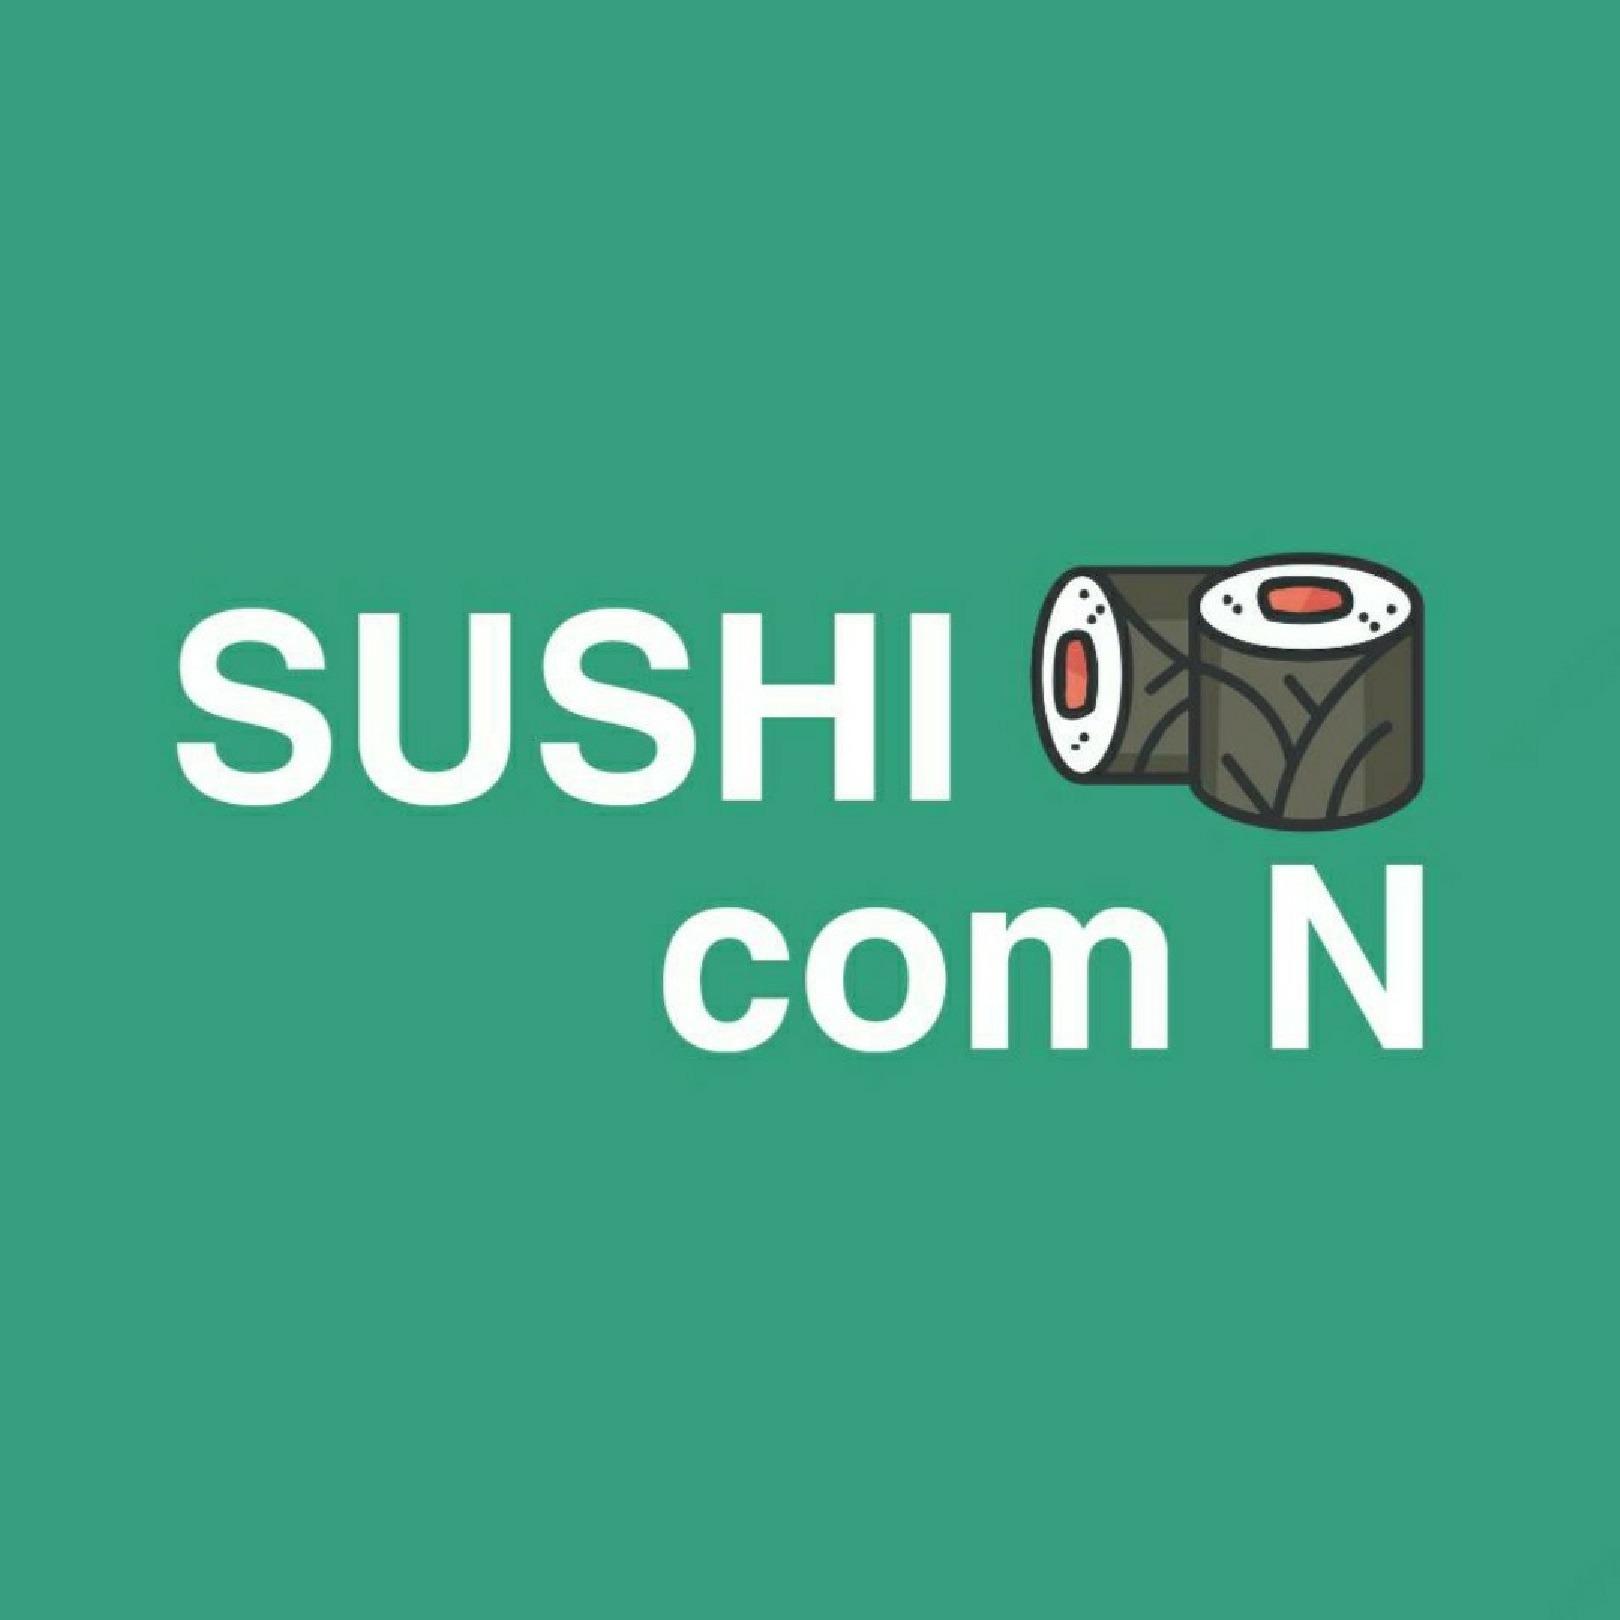 Sushi com N